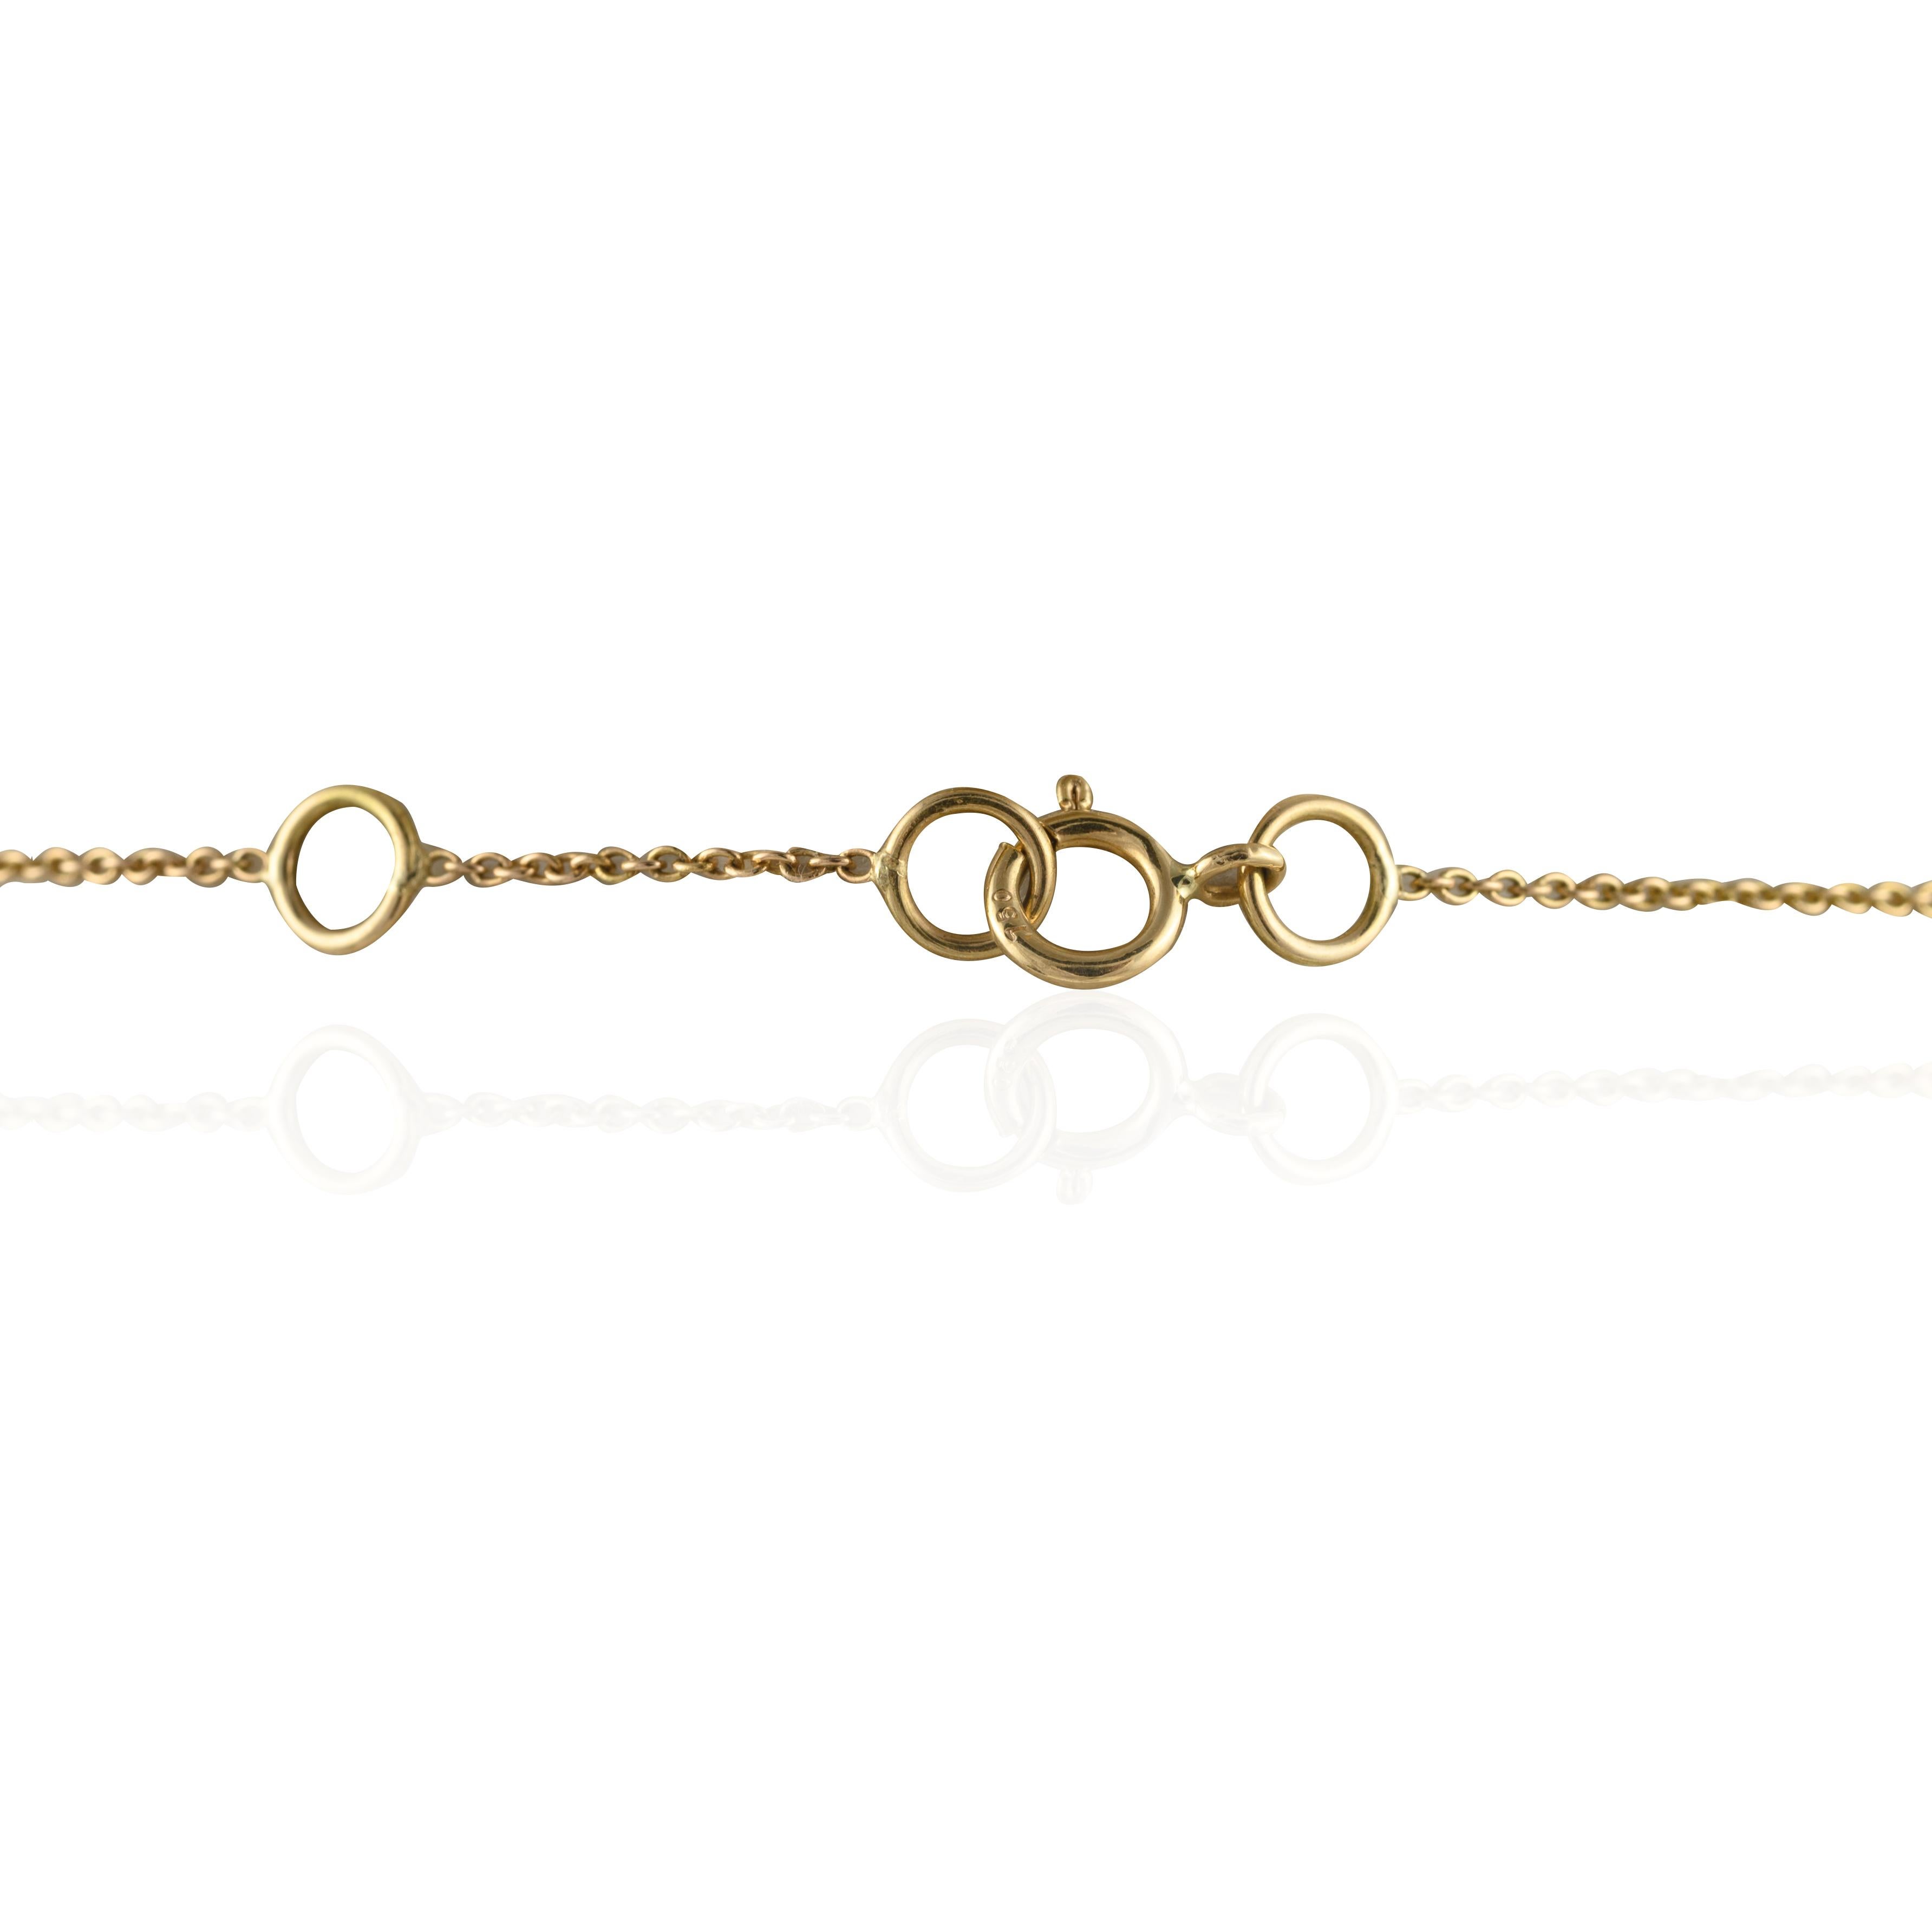 Diamonds Tanzanite Charm Halskette aus 14K Gold mit Tansaniten im Baguetteschliff und Diamanten besetzt. Dieses atemberaubende Schmuckstück wertet einen Freizeitlook oder ein elegantes Outfit sofort auf. 
Der Tansanit bringt Energie, Gelassenheit